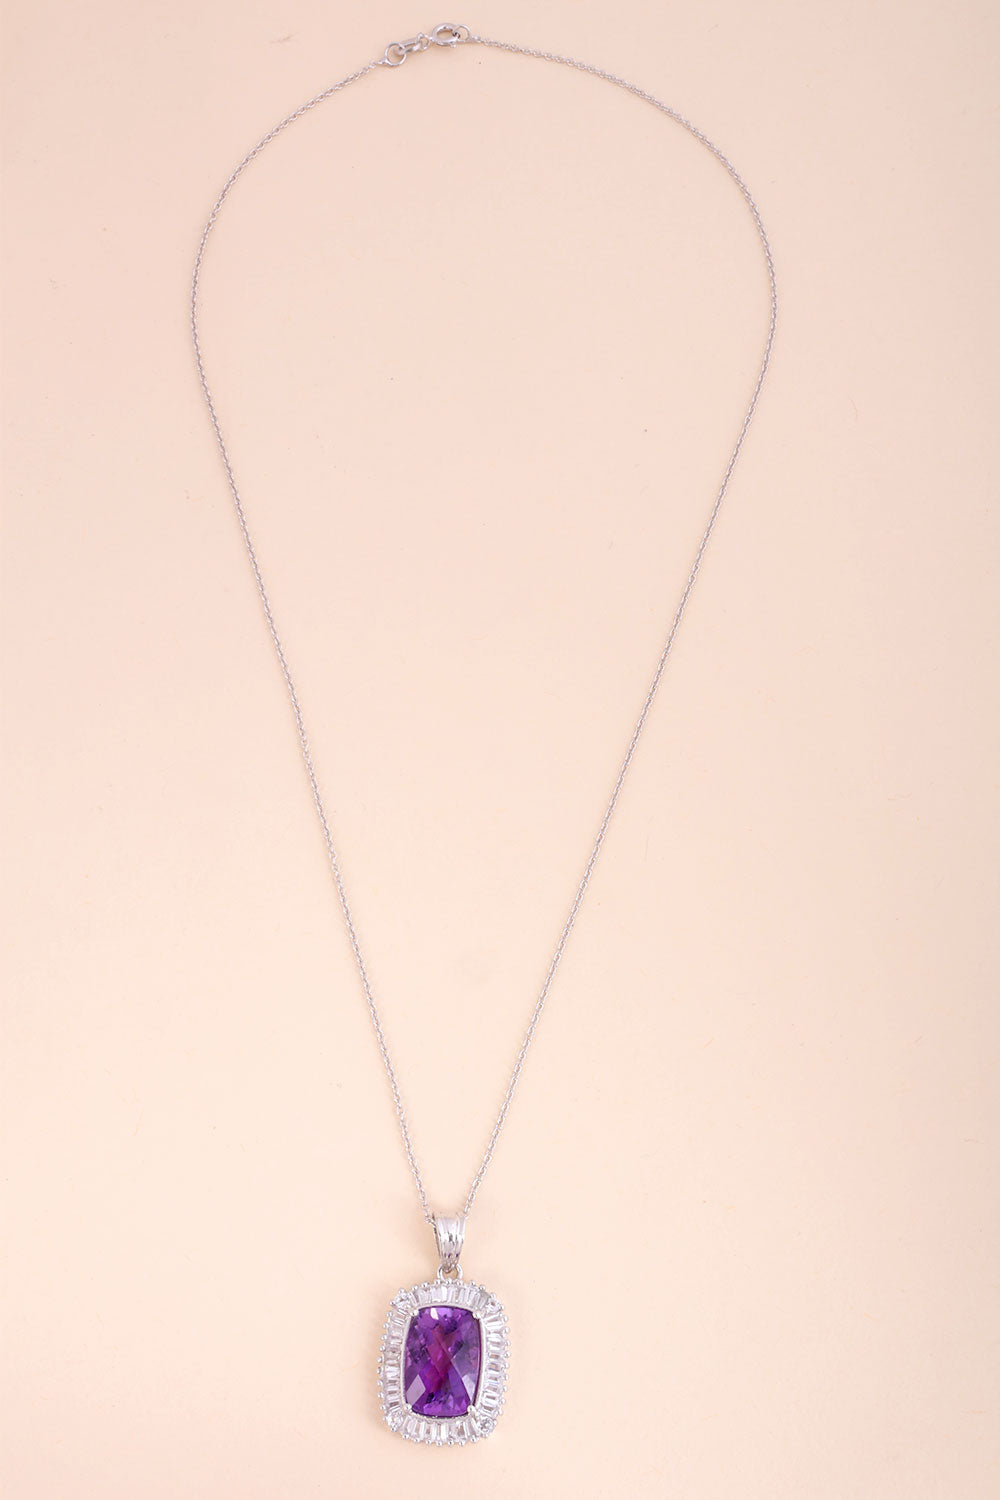 Amethyst White Topaz Sterling Silver Necklace Pendant Chain 10067162 - Avishya